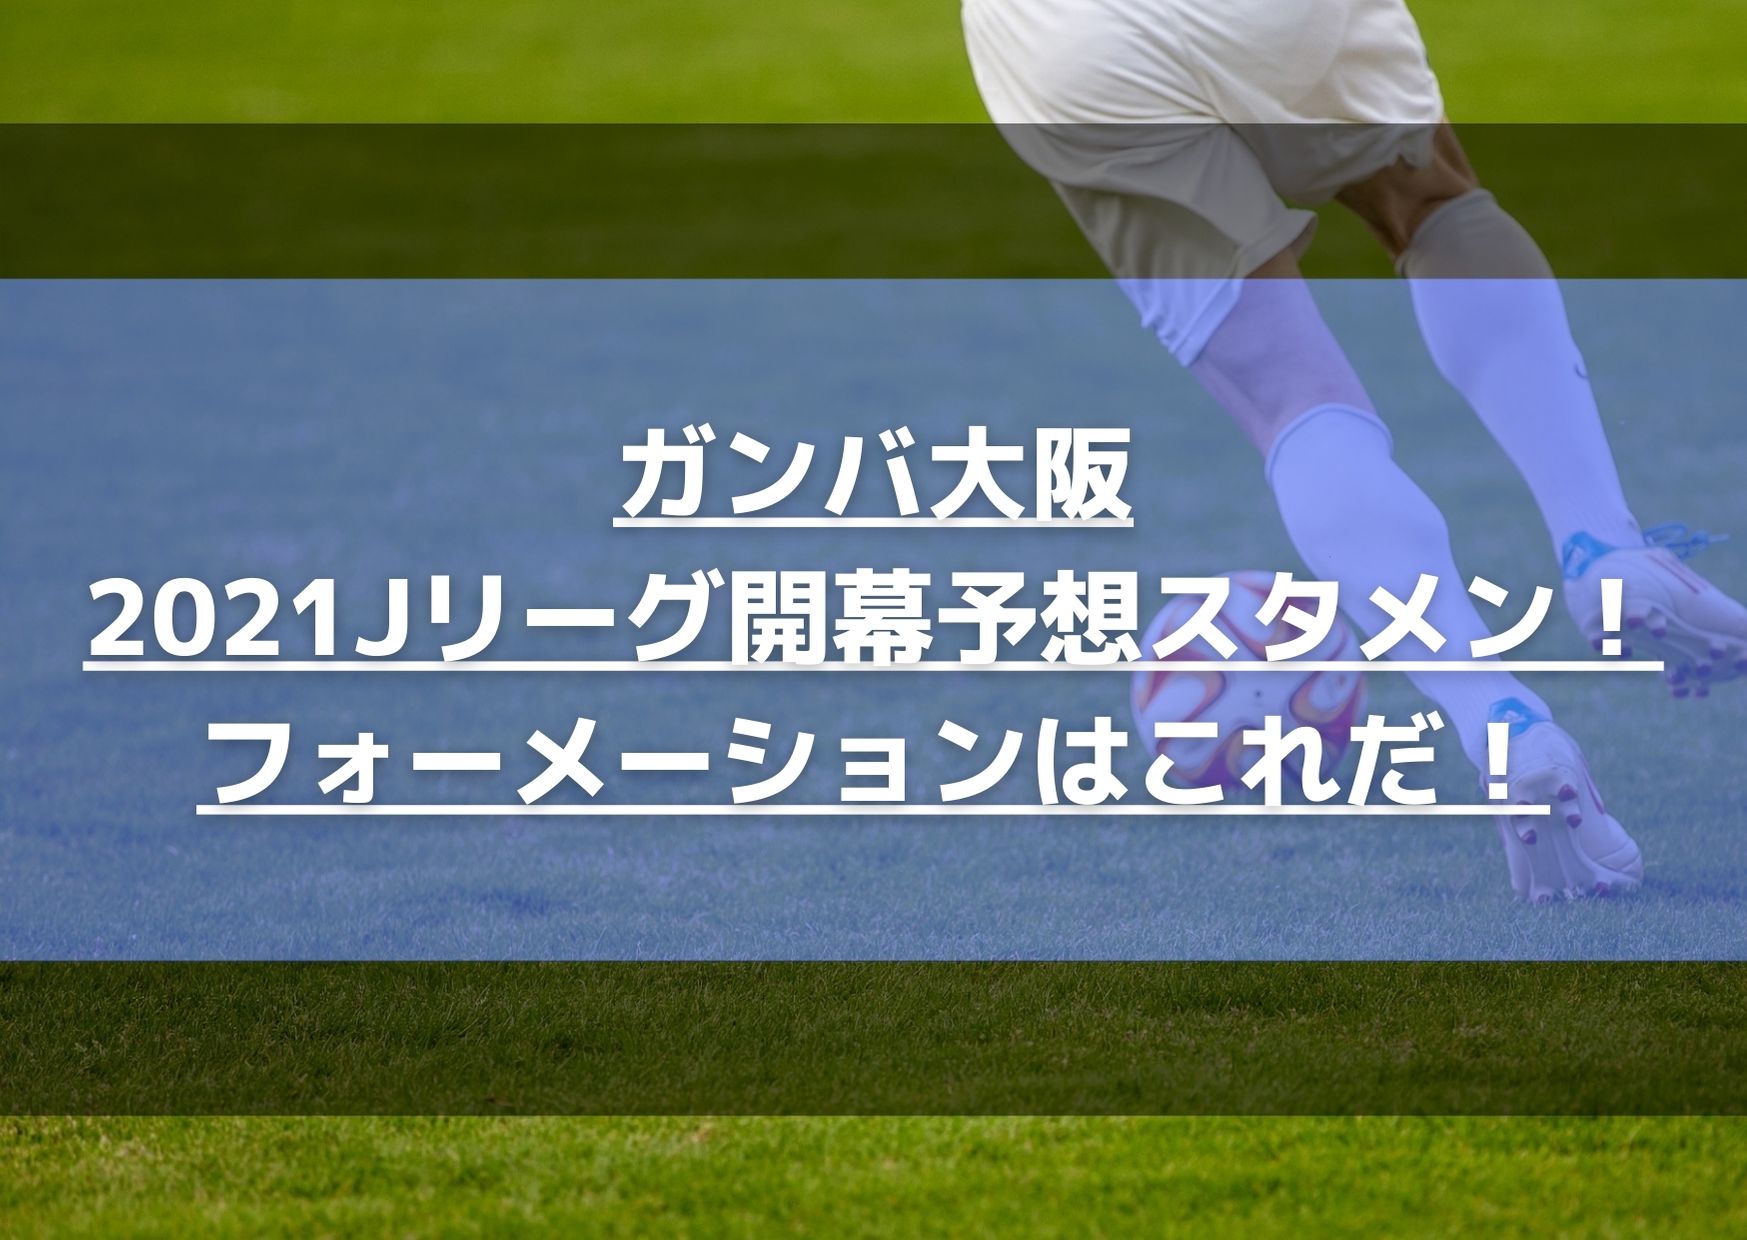 ガンバ大阪2021Jリーグ開幕戦予想スタメン！フォーメーションはこれだ！